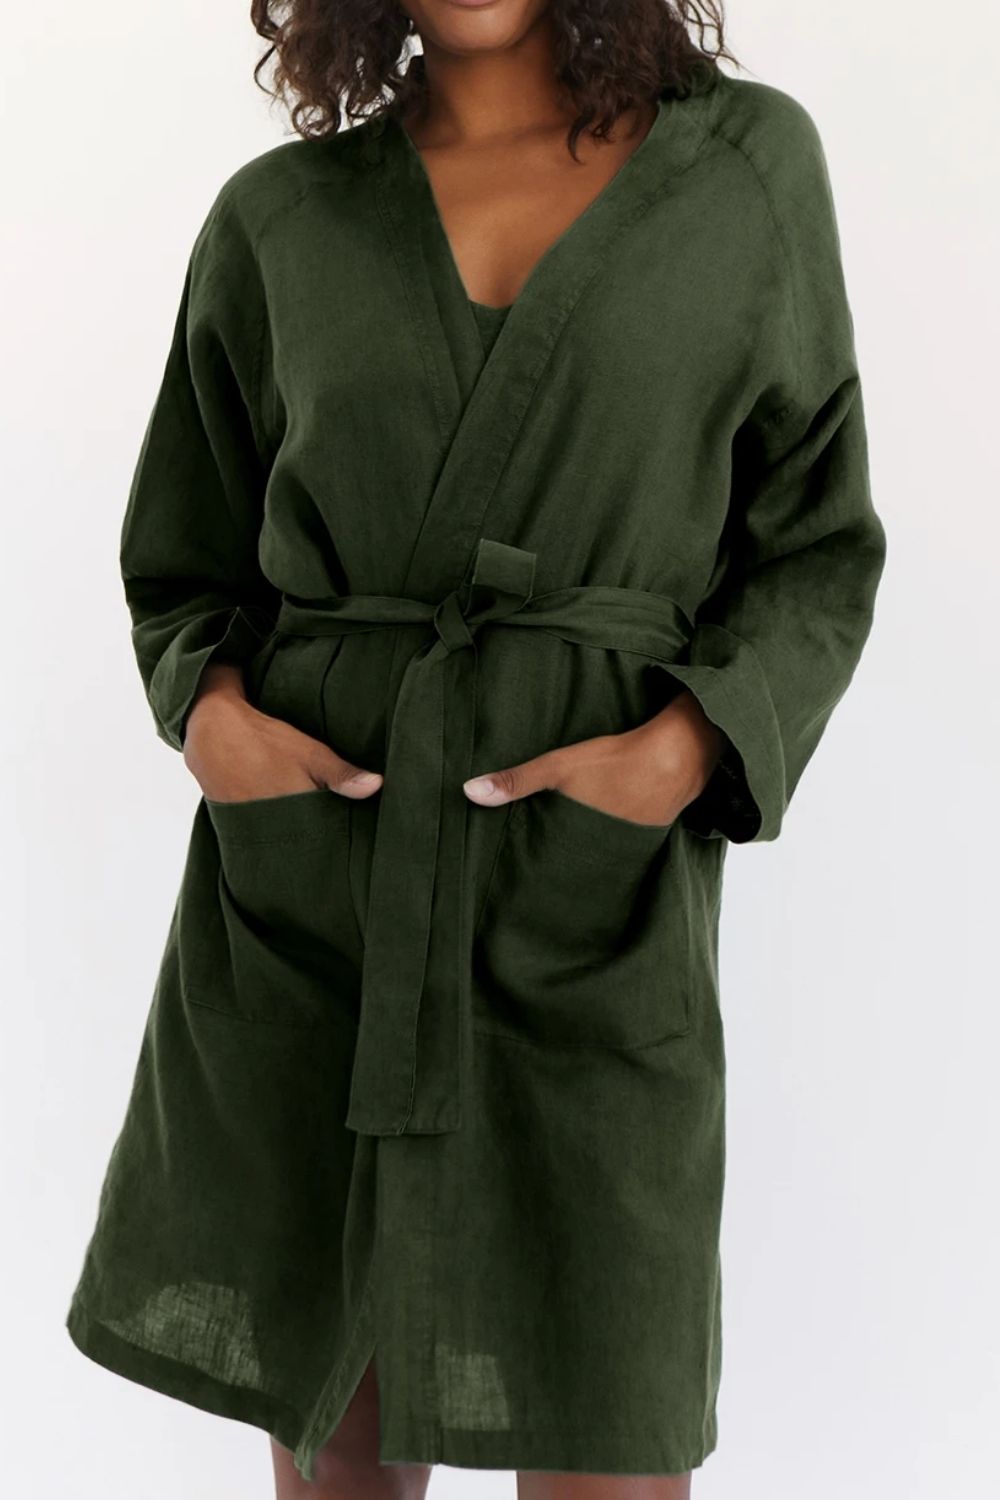 Ellos Womens Plus Size Hooded Fleece Robe 